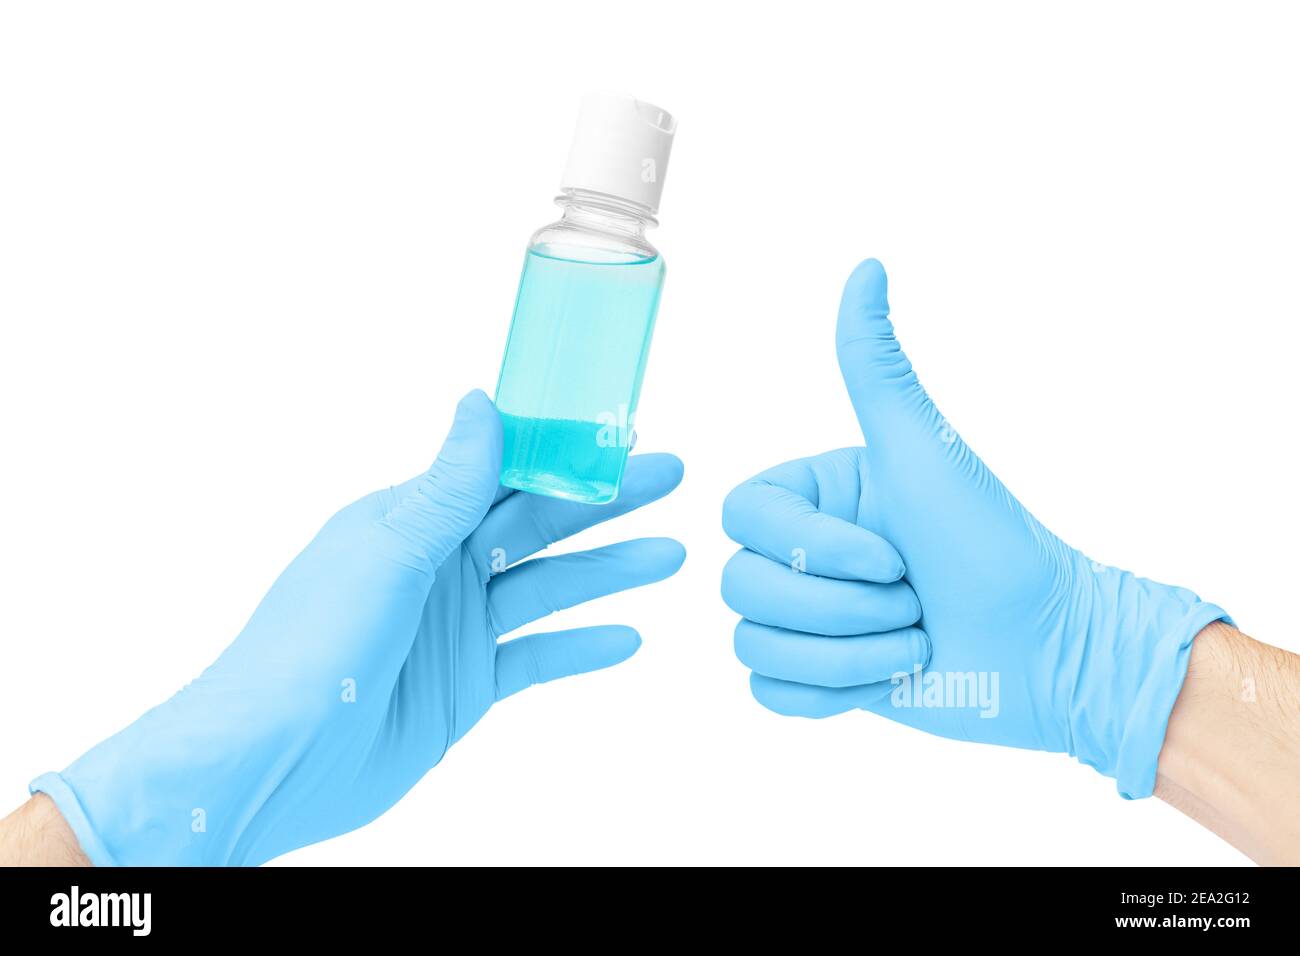 La mano isolata con guanti utilizza un disinfettante liquido a base di alcol o un detergente che uccide la maggior parte dei tipi di microbi e virus. COVID e germofobia conc Foto Stock